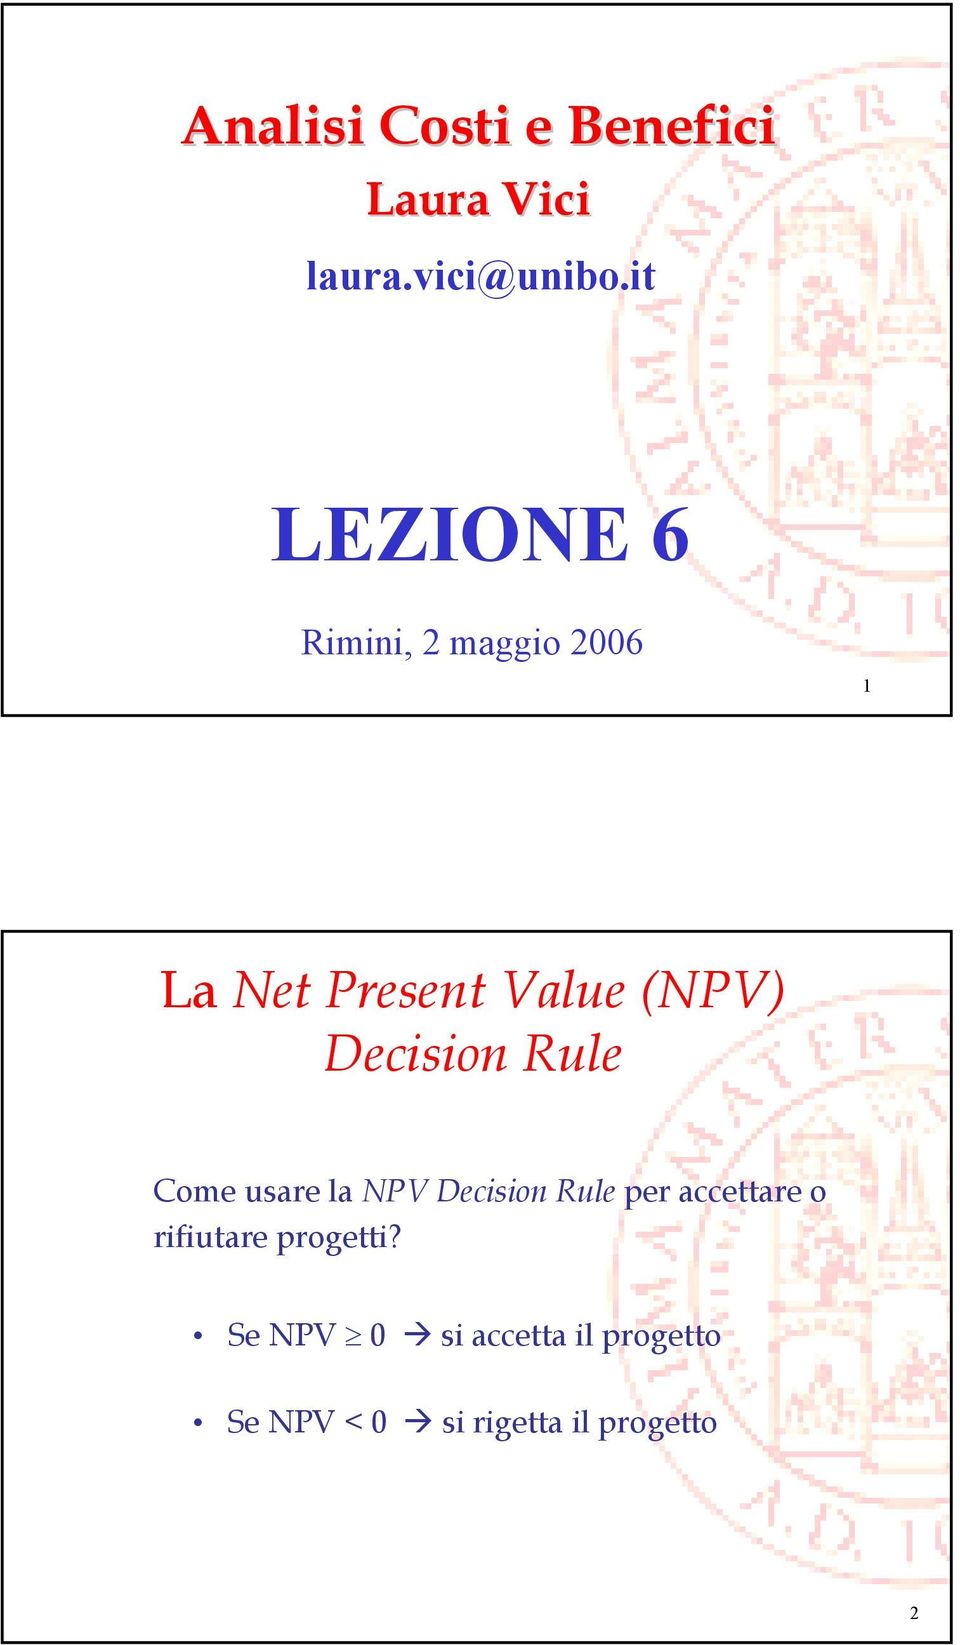 Decision Rule Come usare la NPV Decision Rule per accettare o